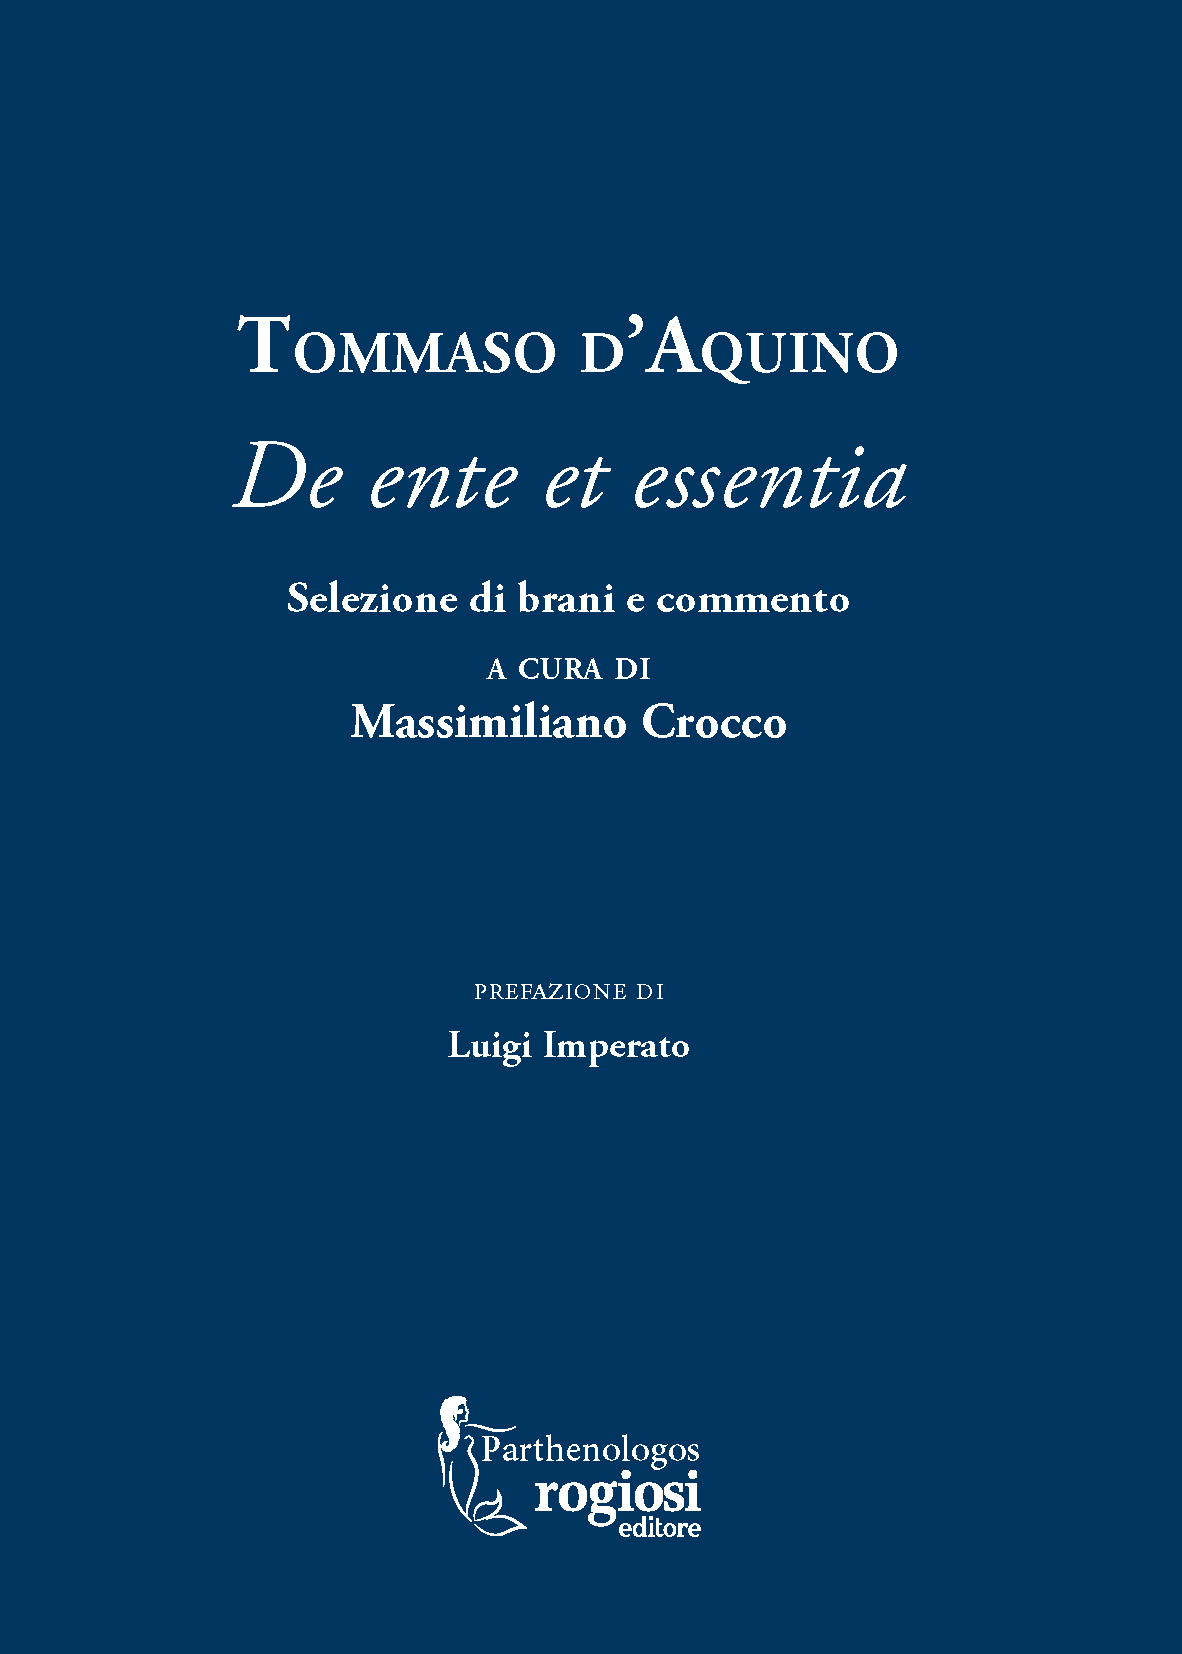 Rogiosi Editore presenta ‘Tommaso D’Aquino’, a cura di Massimiliano Crocco